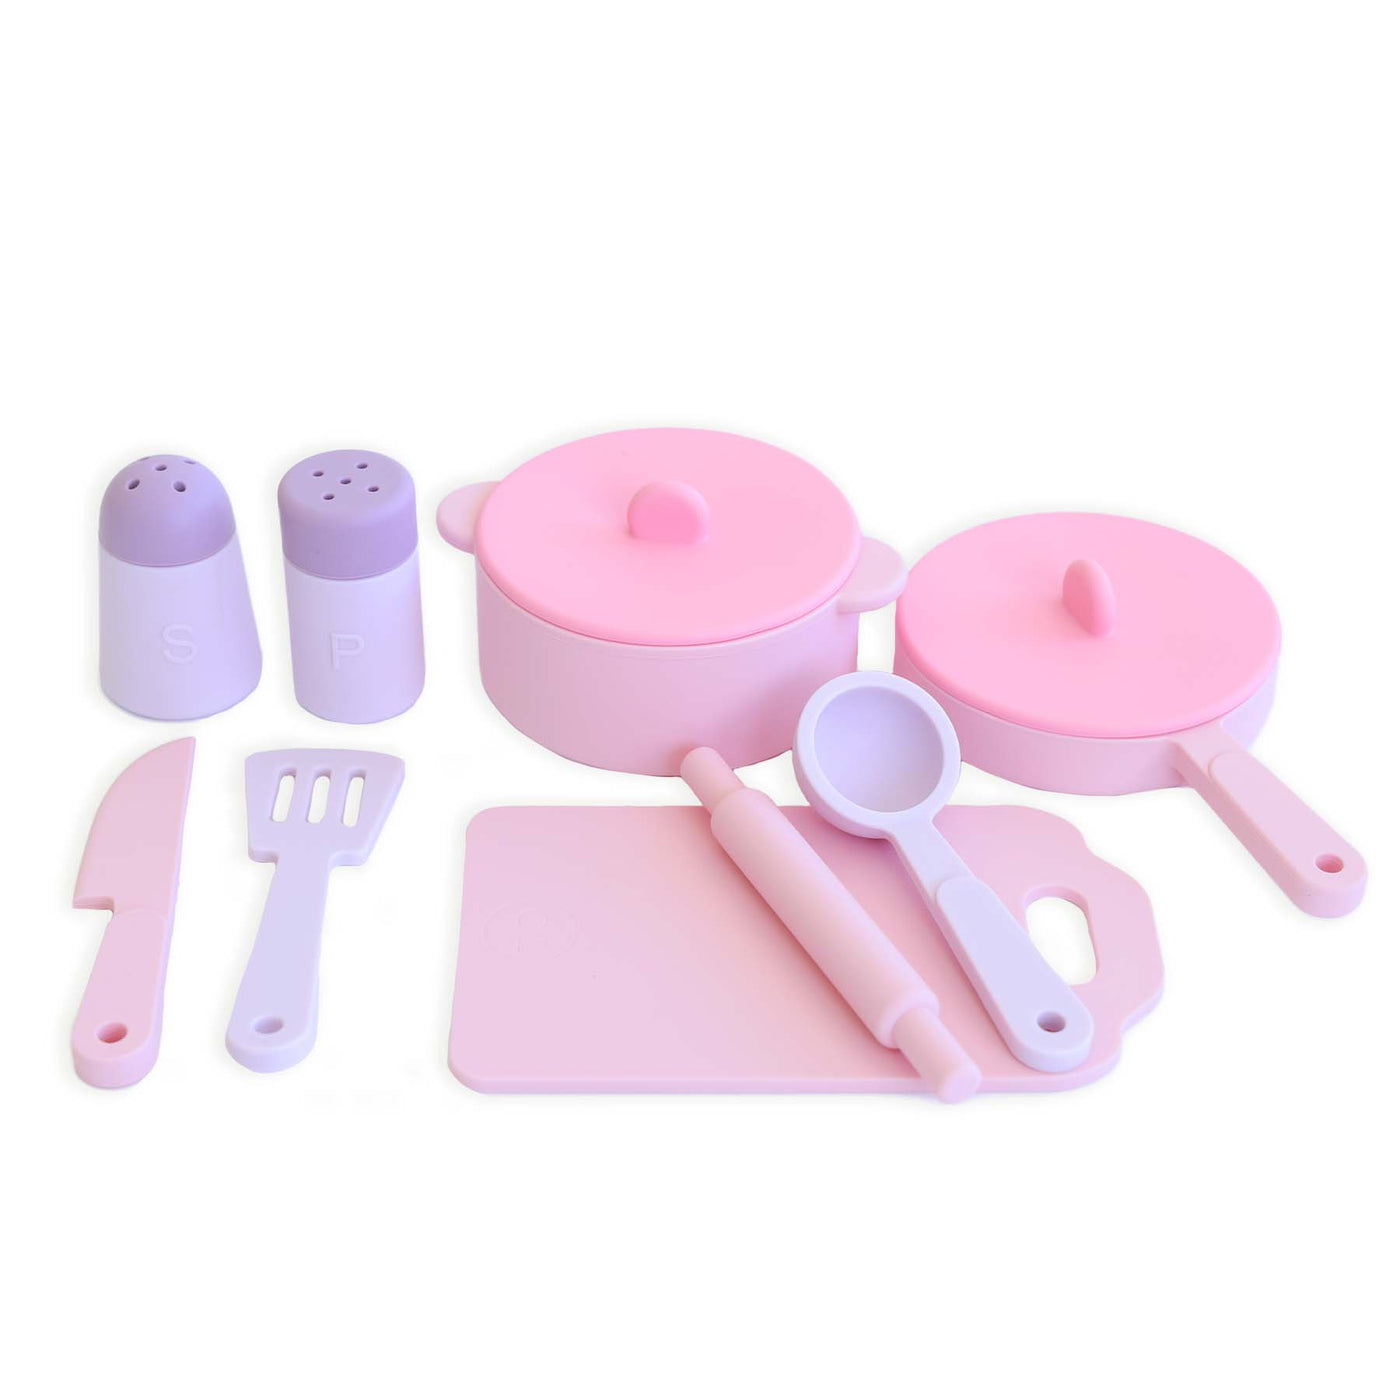 Silicone Play Kitchen Set | Bubblegum